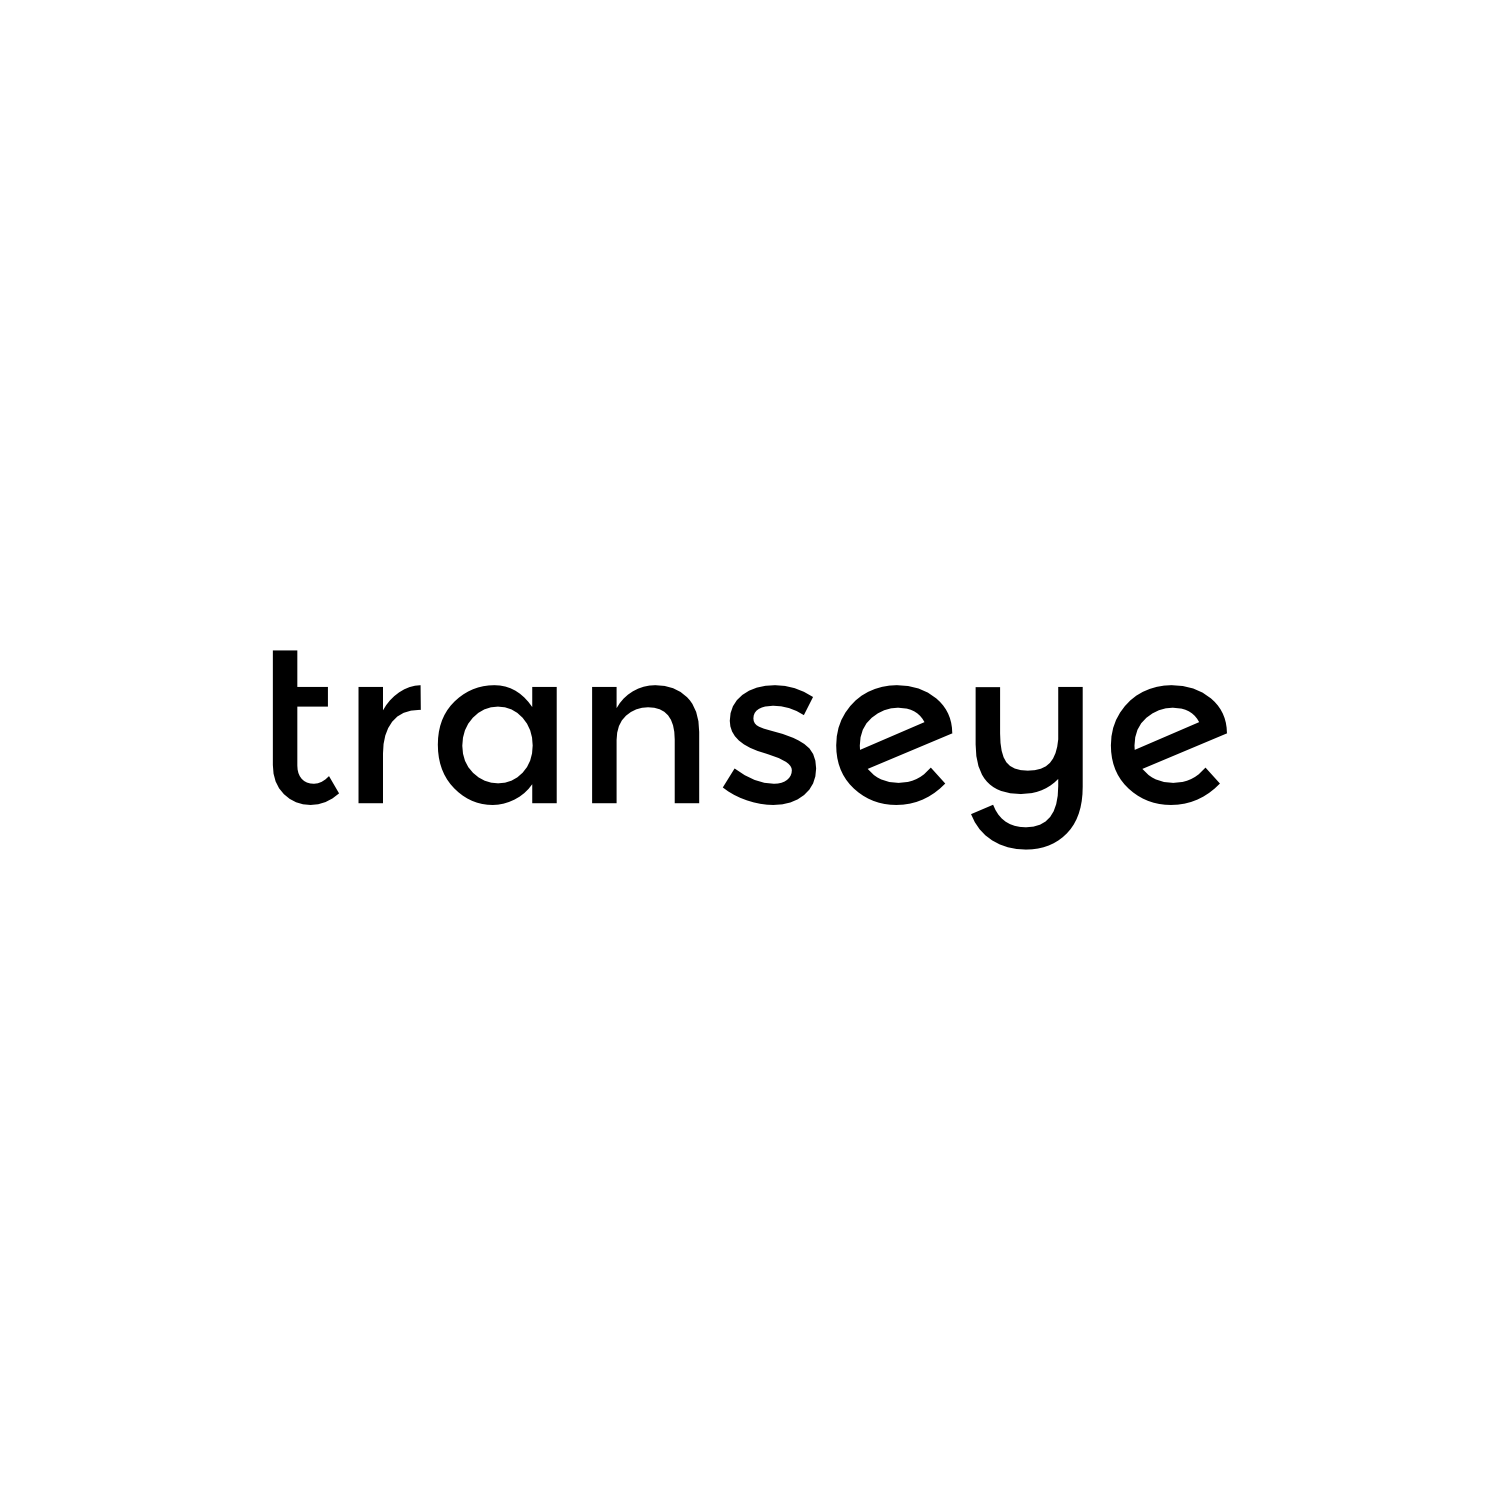 Logotipų kūrimas, logotipo dizainas verslui, responsive logo, žodinis Transeye logotipas